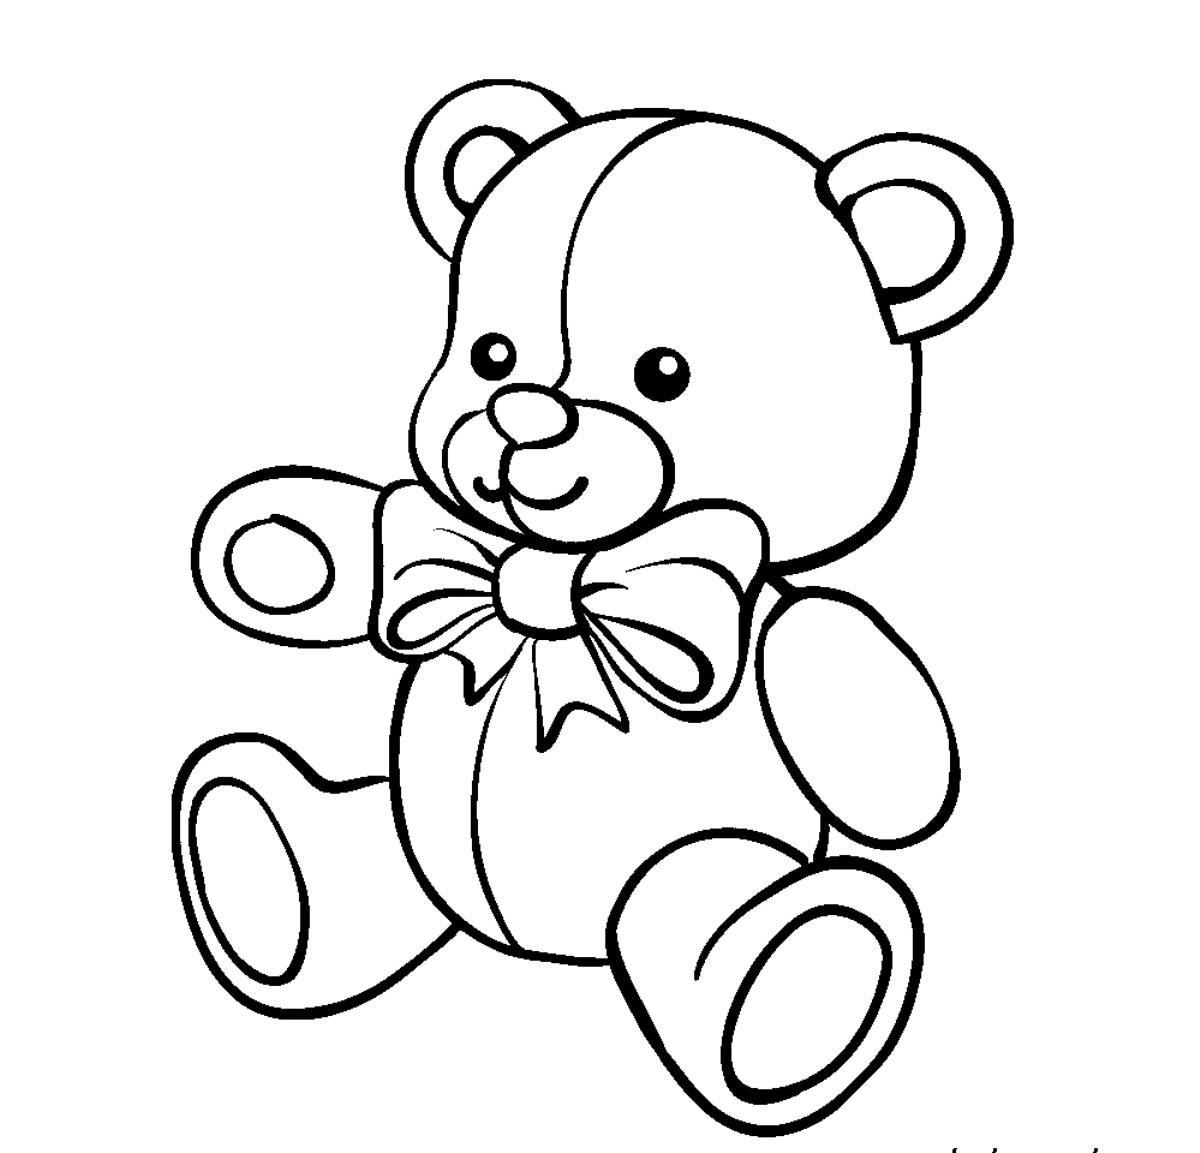 Раскраски с мишками Тедди, милые и красивые раскраски для детей с медвежатами  Сидящий мишка Тедди с бантиком